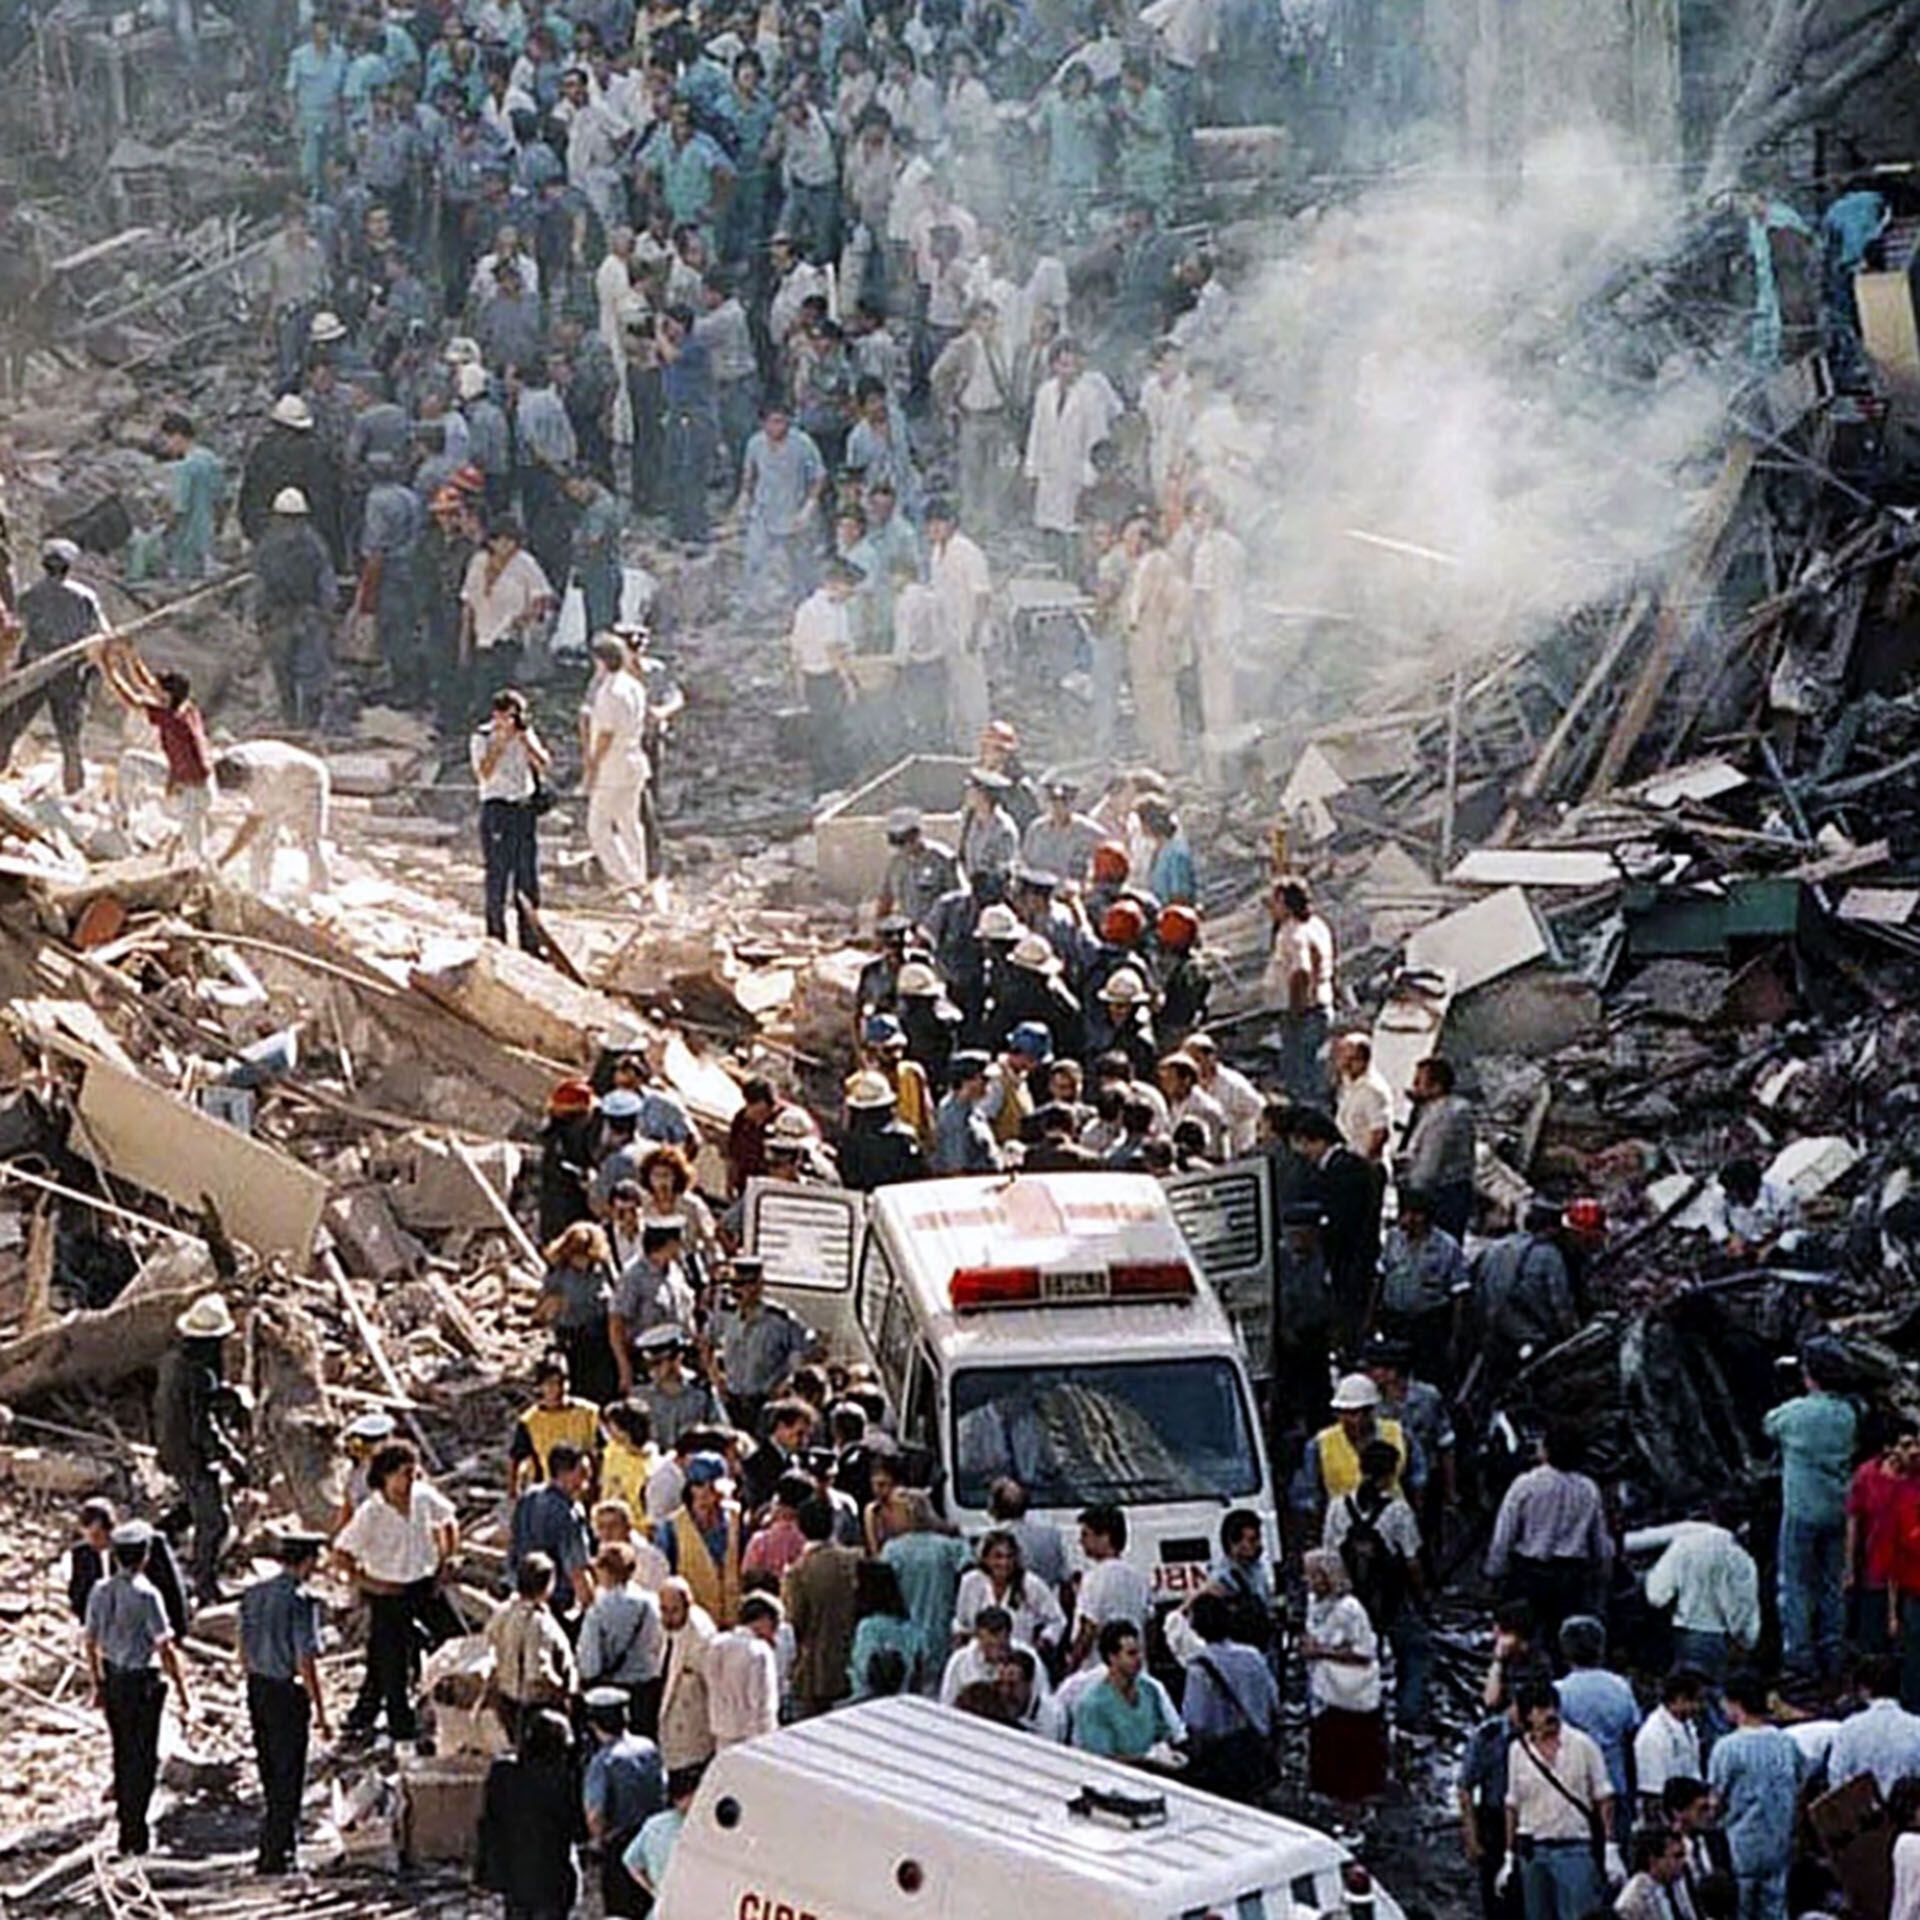 El atentado a la Embajada de Israel ocurrió el 17 de marzo de 1992. Iosi trabajó en los trabajos de recolección de escombros y la recuperación de documentos